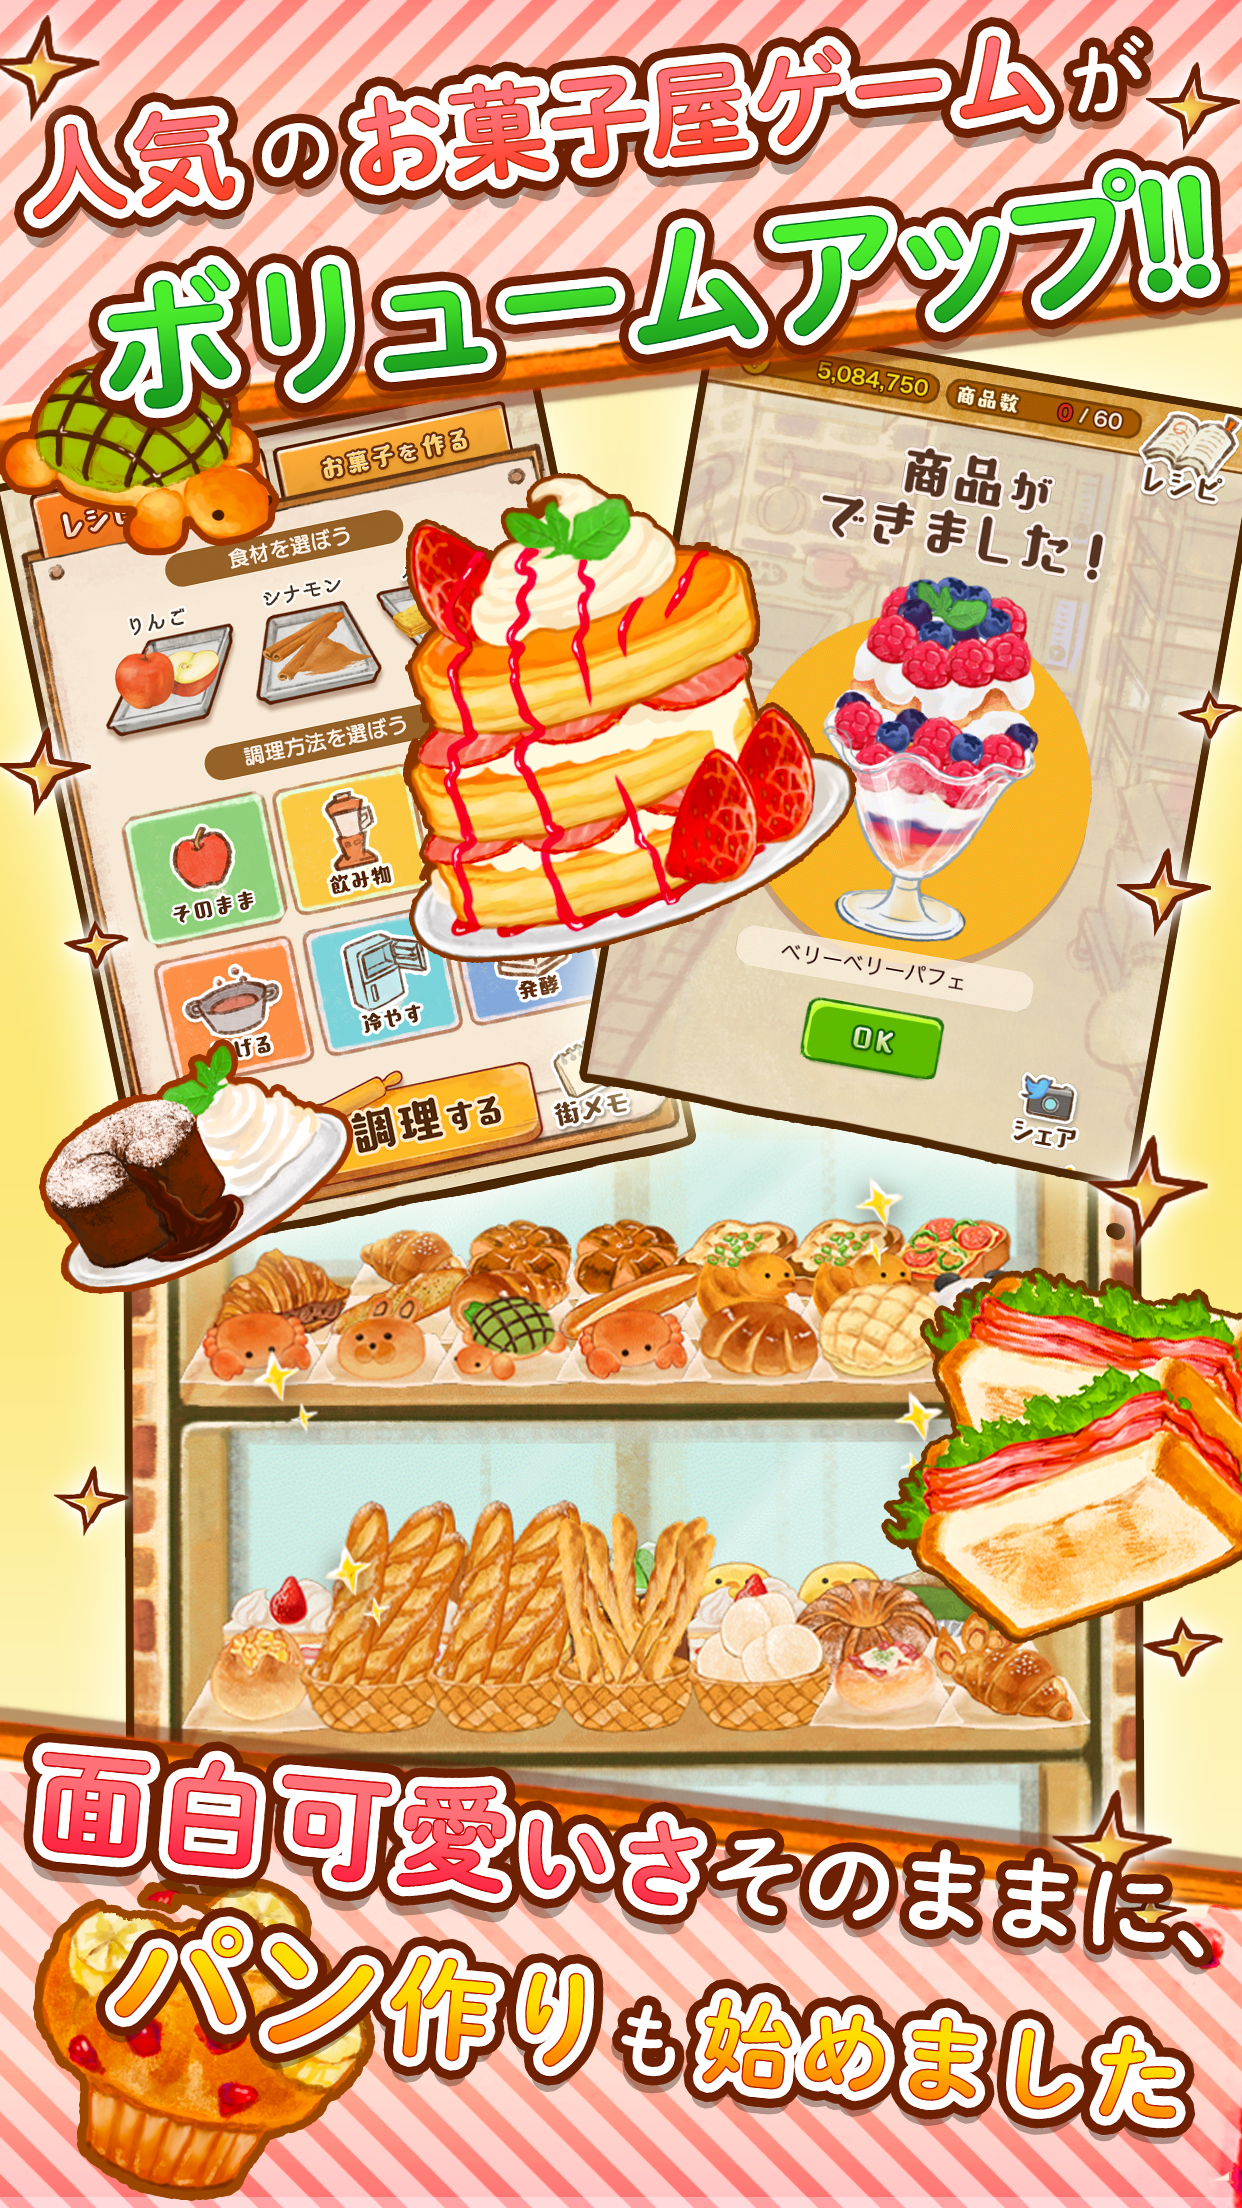 Screenshot 1 of 洋菓子店ローズ パンもはじめました 1.1.129